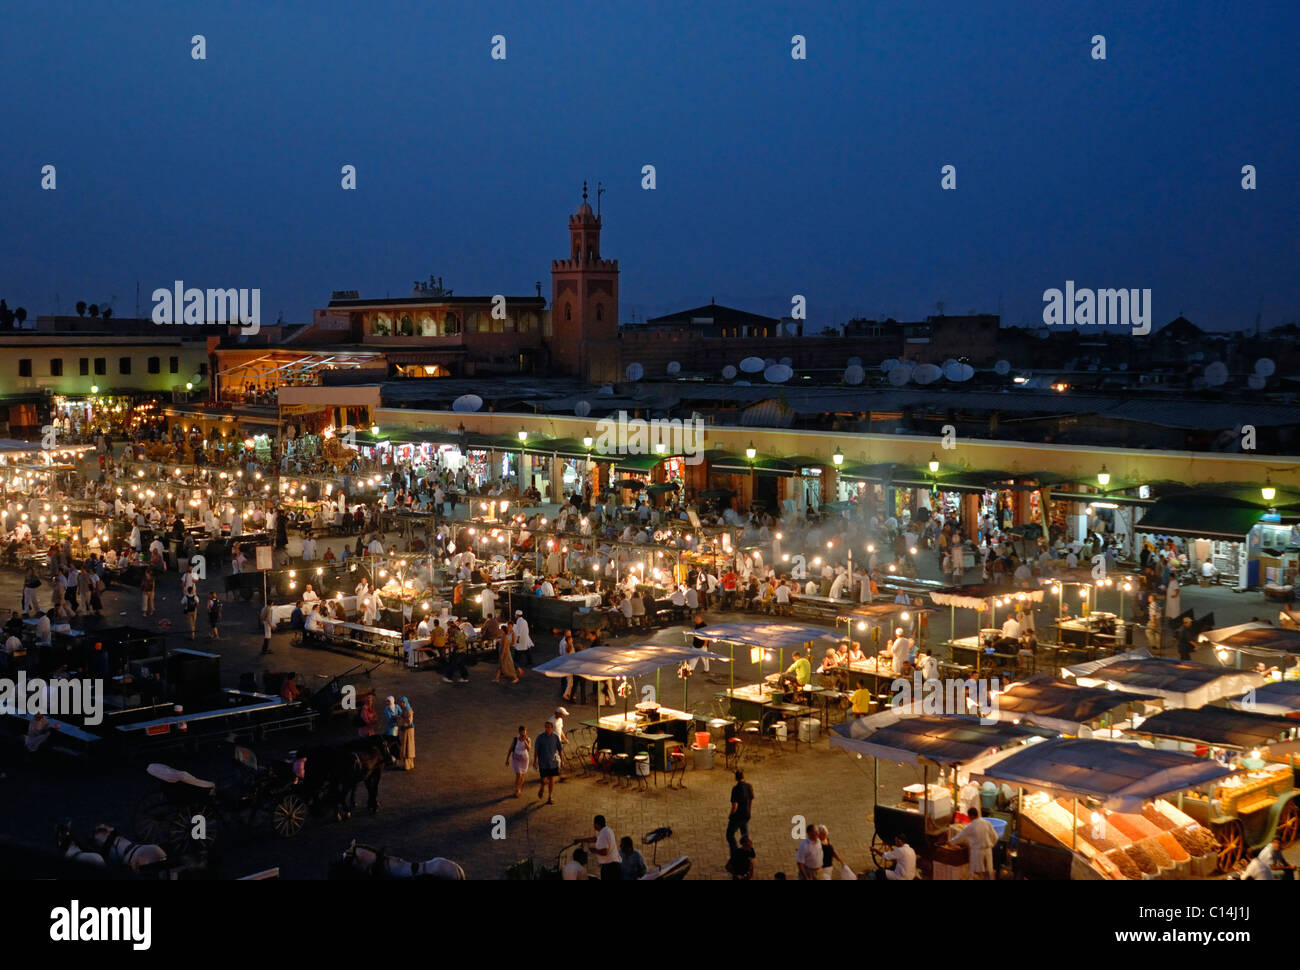 Jemma el fna, Marrakech, Maroc Banque D'Images